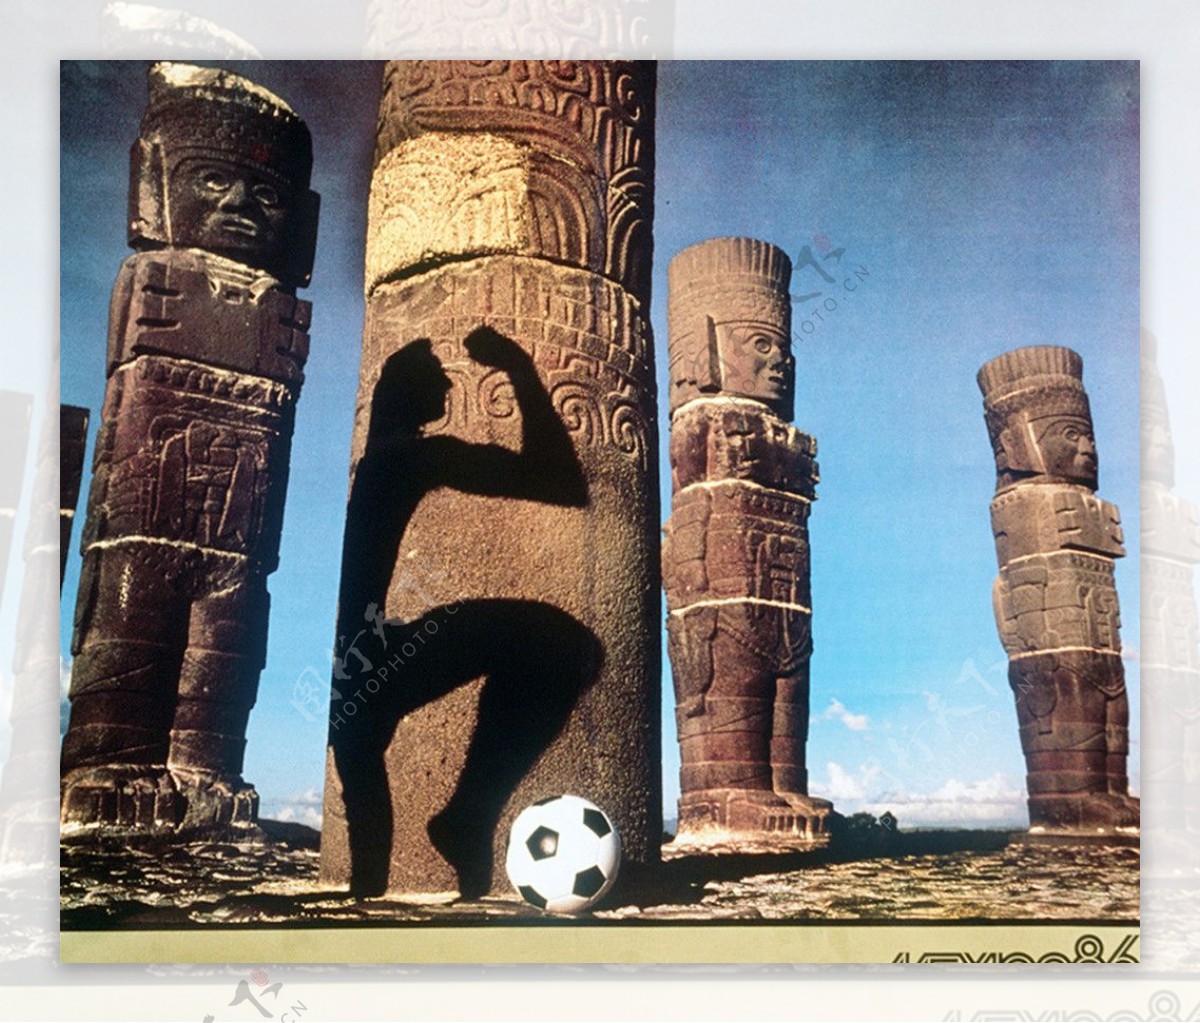 1986年墨西哥世界杯图片